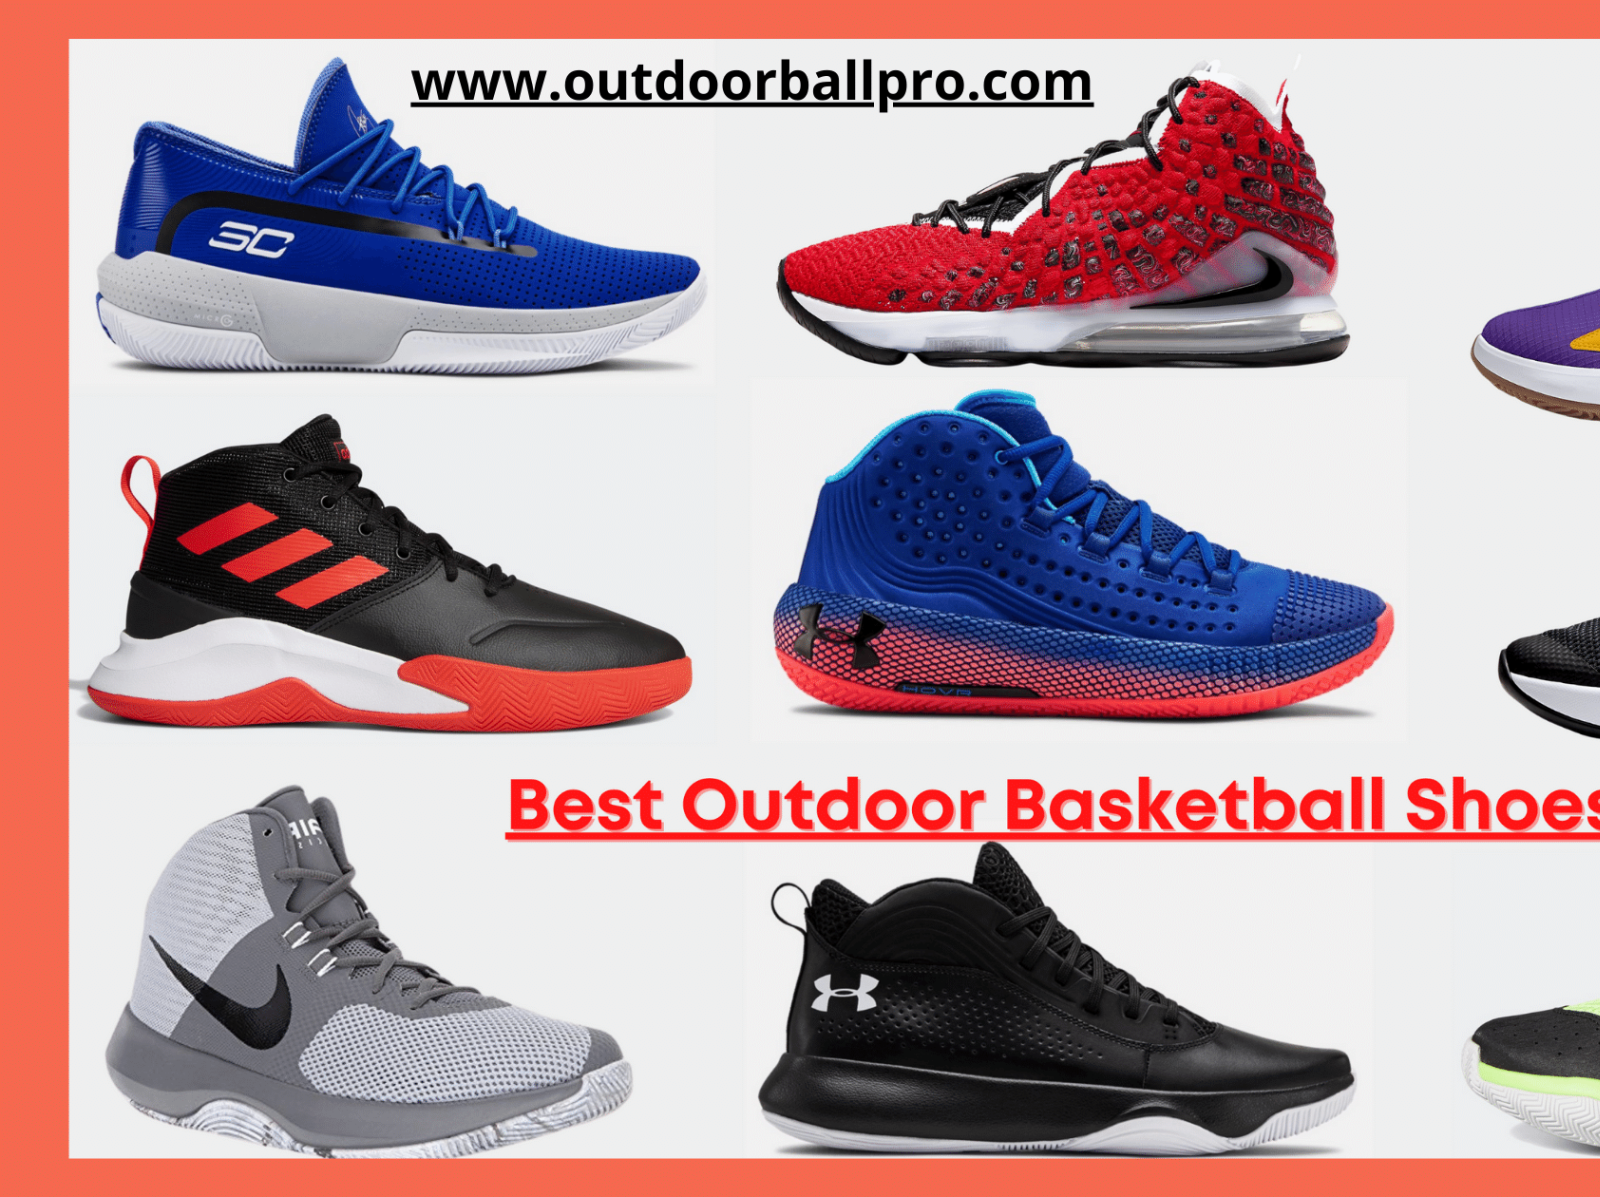 natuurlijk Rechtmatig spectrum best outdoor basketball shoes by Outdoor Ball Pro on Dribbble